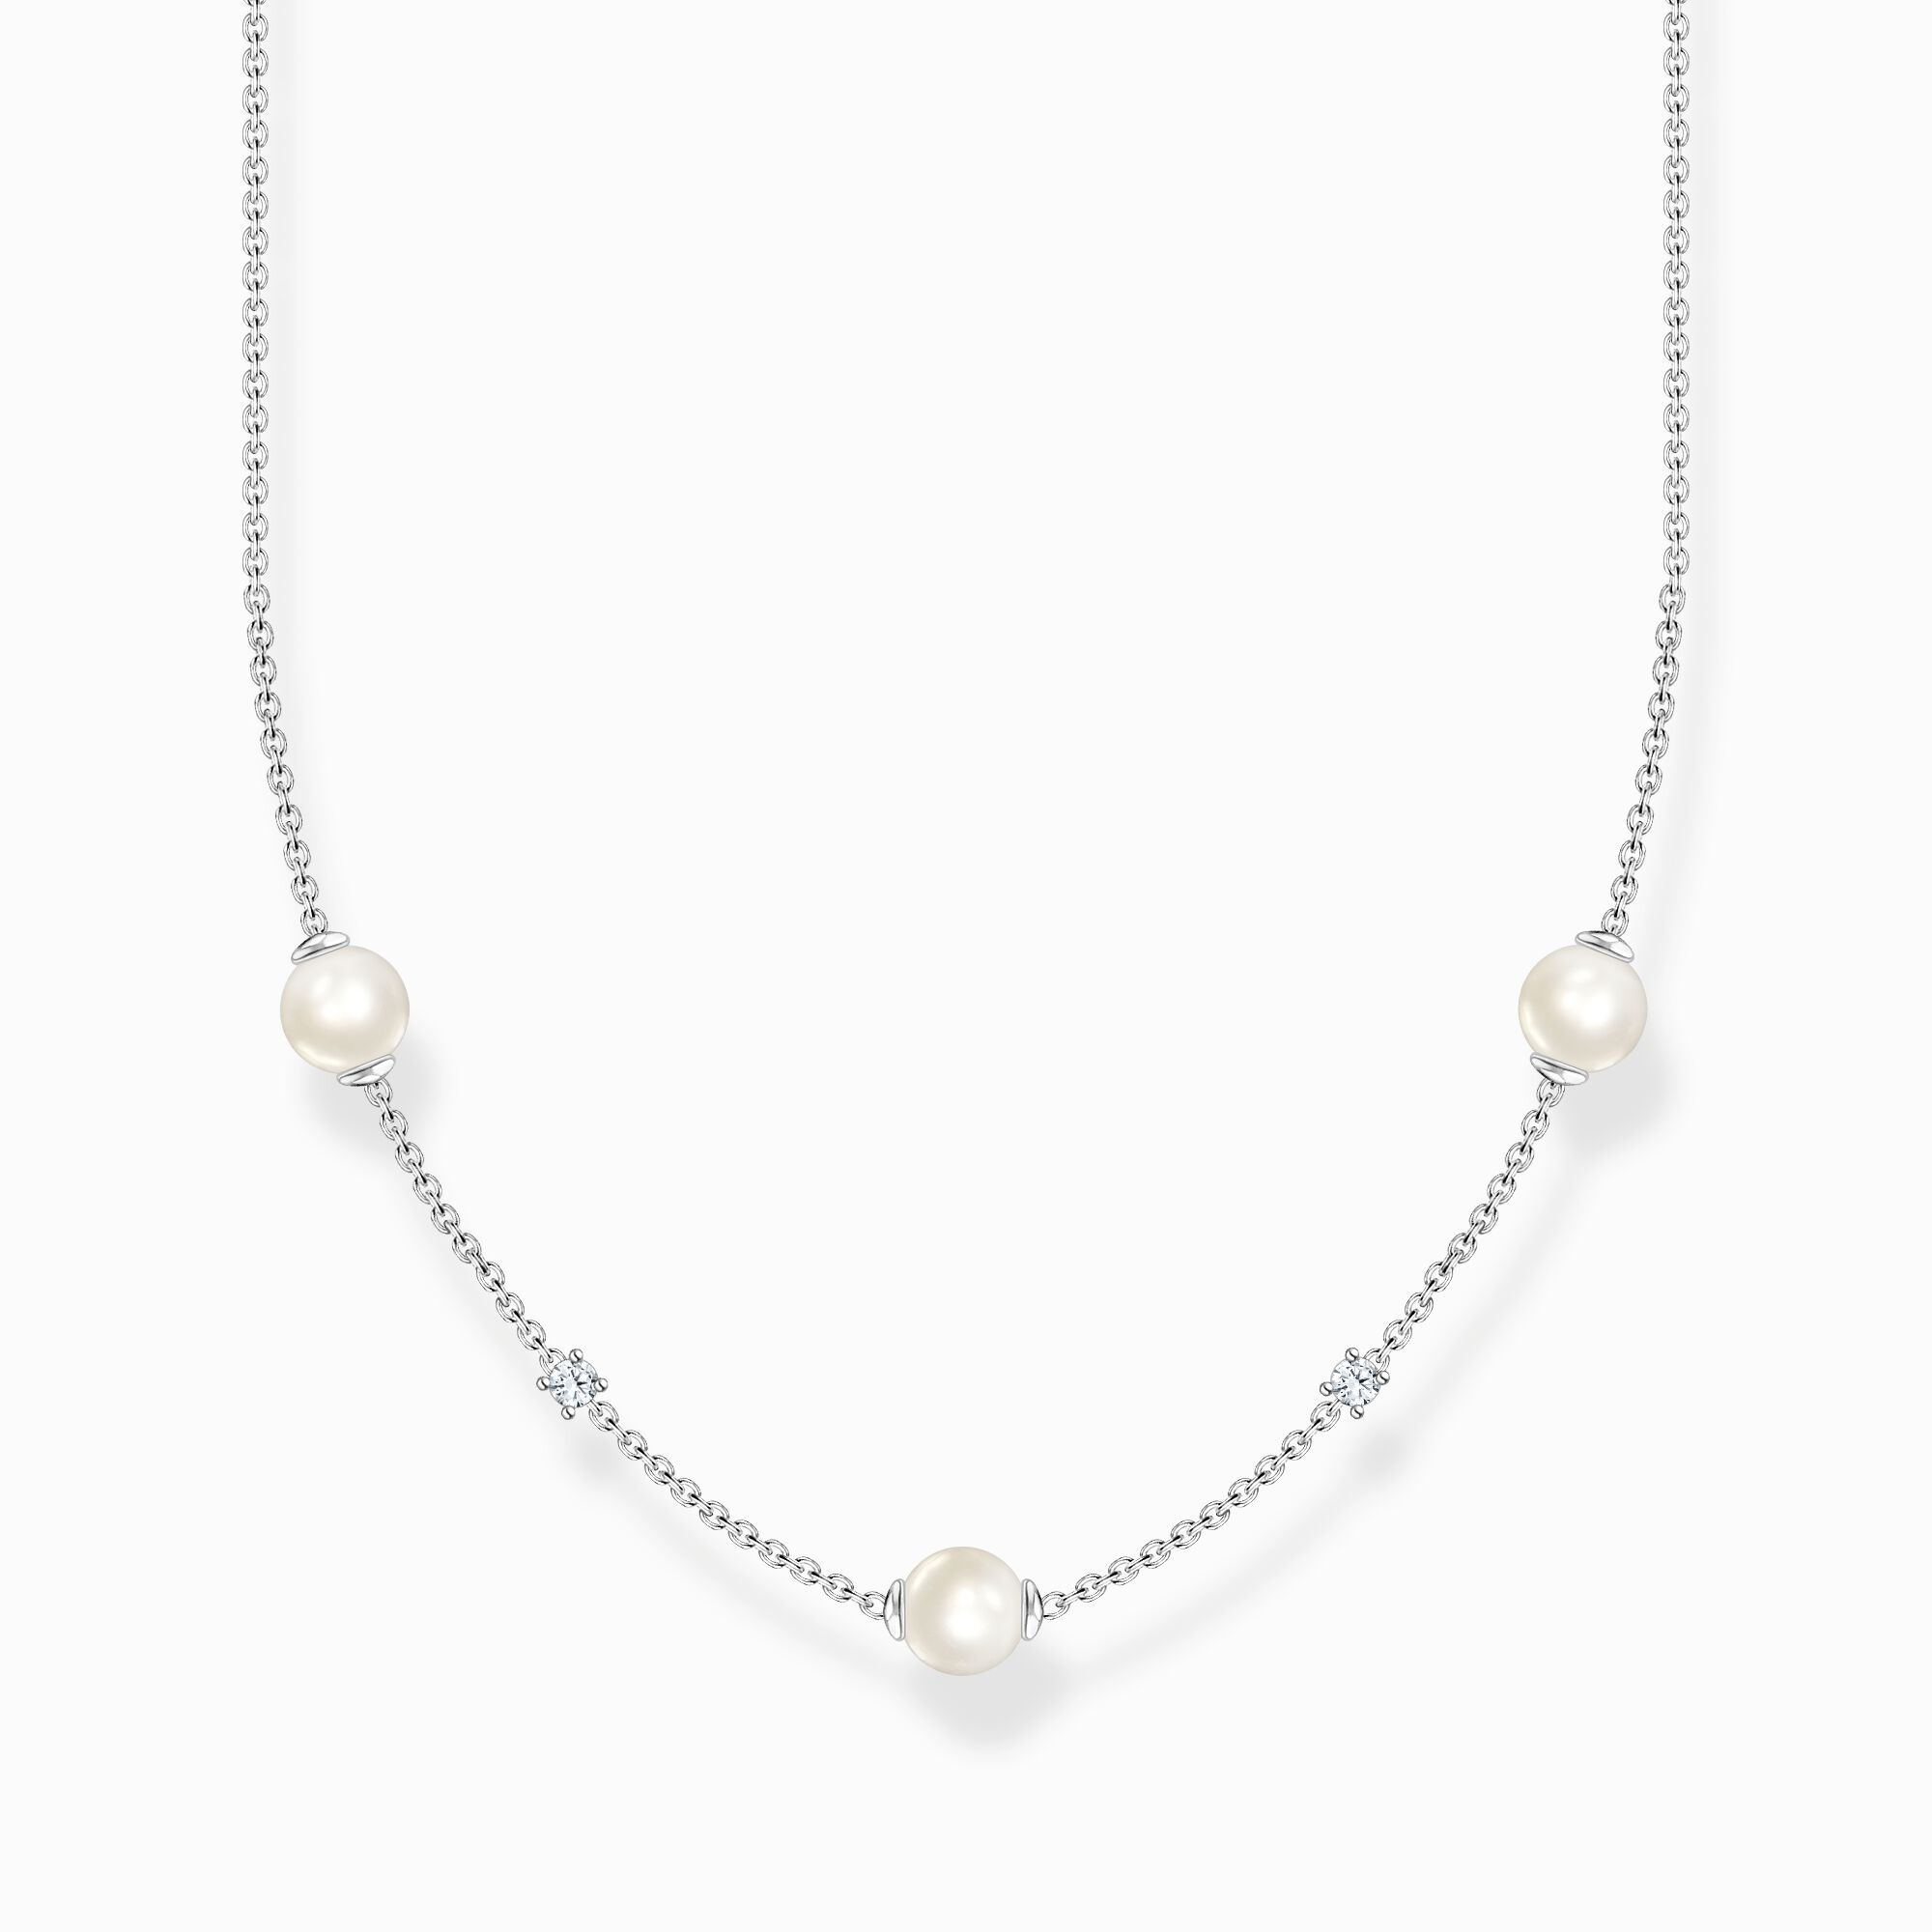 Cadena perlas con piedras blancas plata de la colección Charming Collection en la tienda online de THOMAS SABO